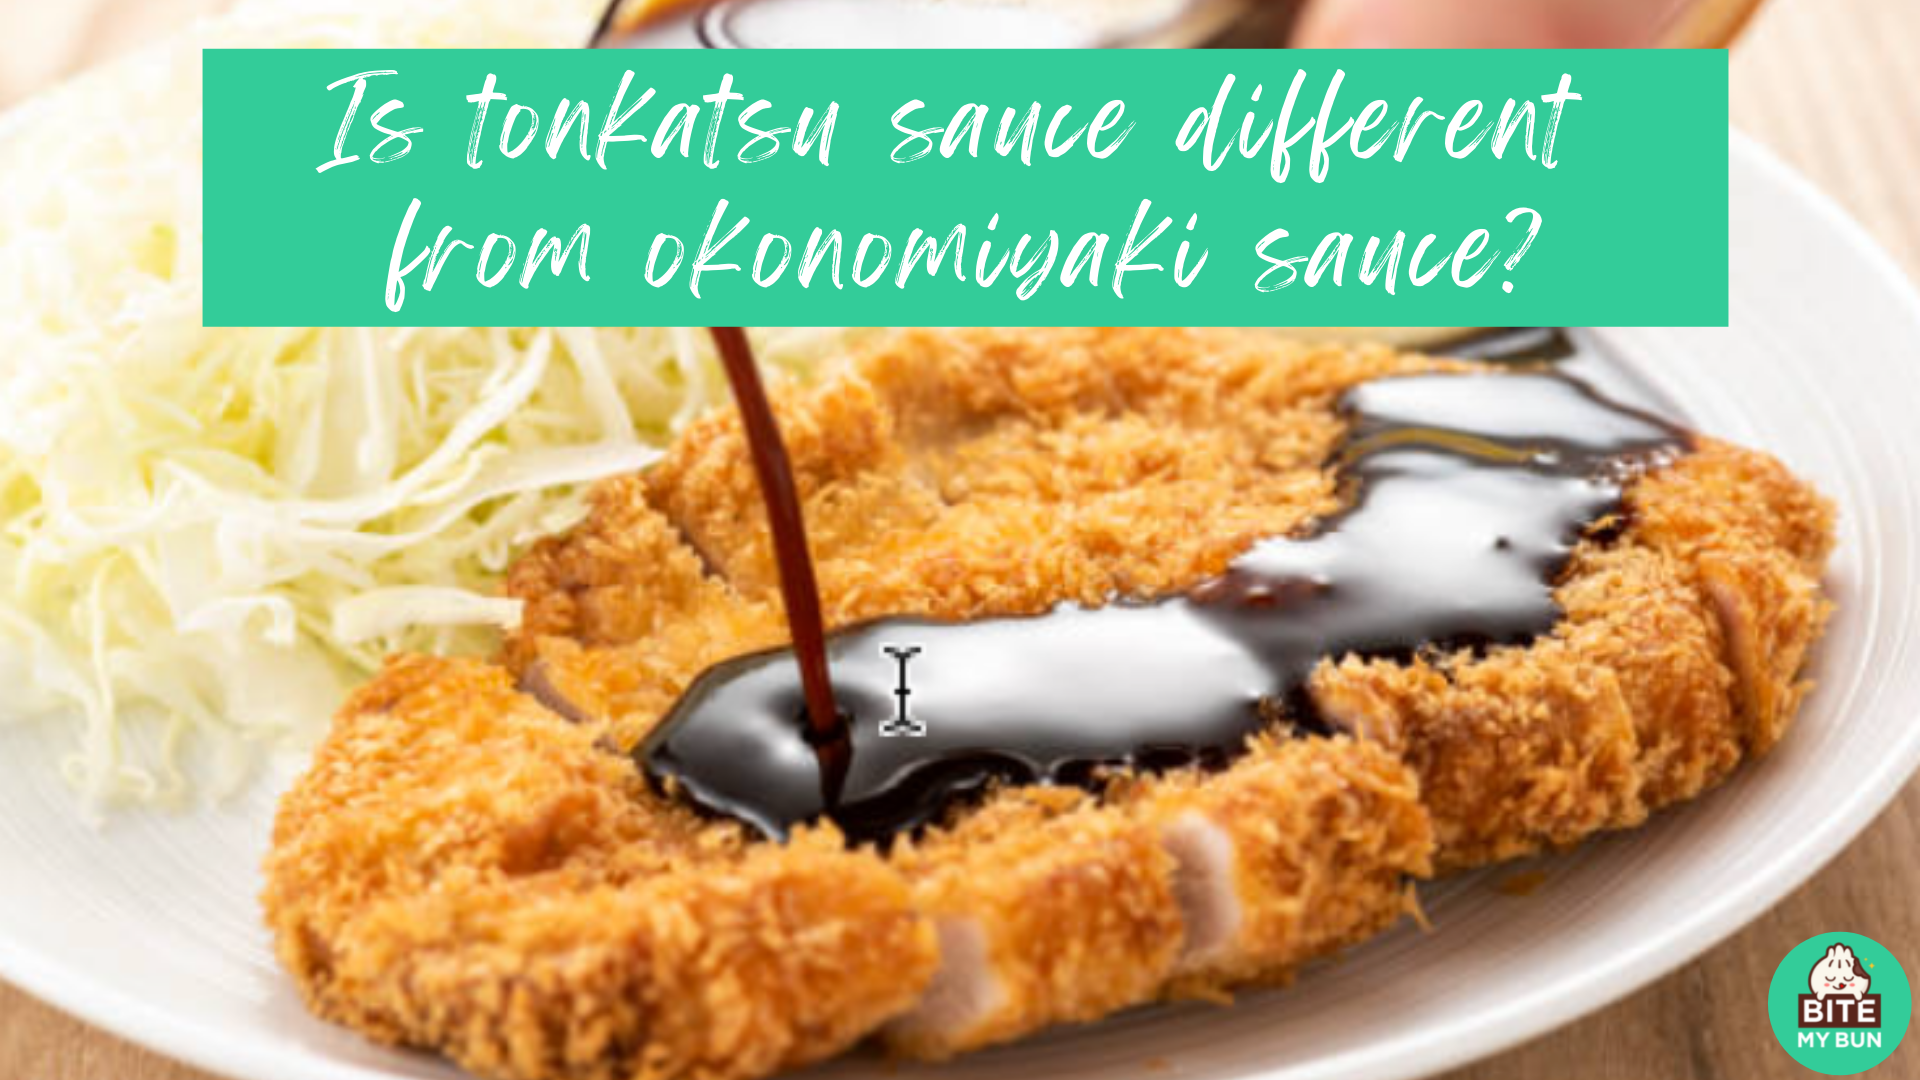 ¿La salsa tonkatsu es diferente de la salsa okonomiyaki?